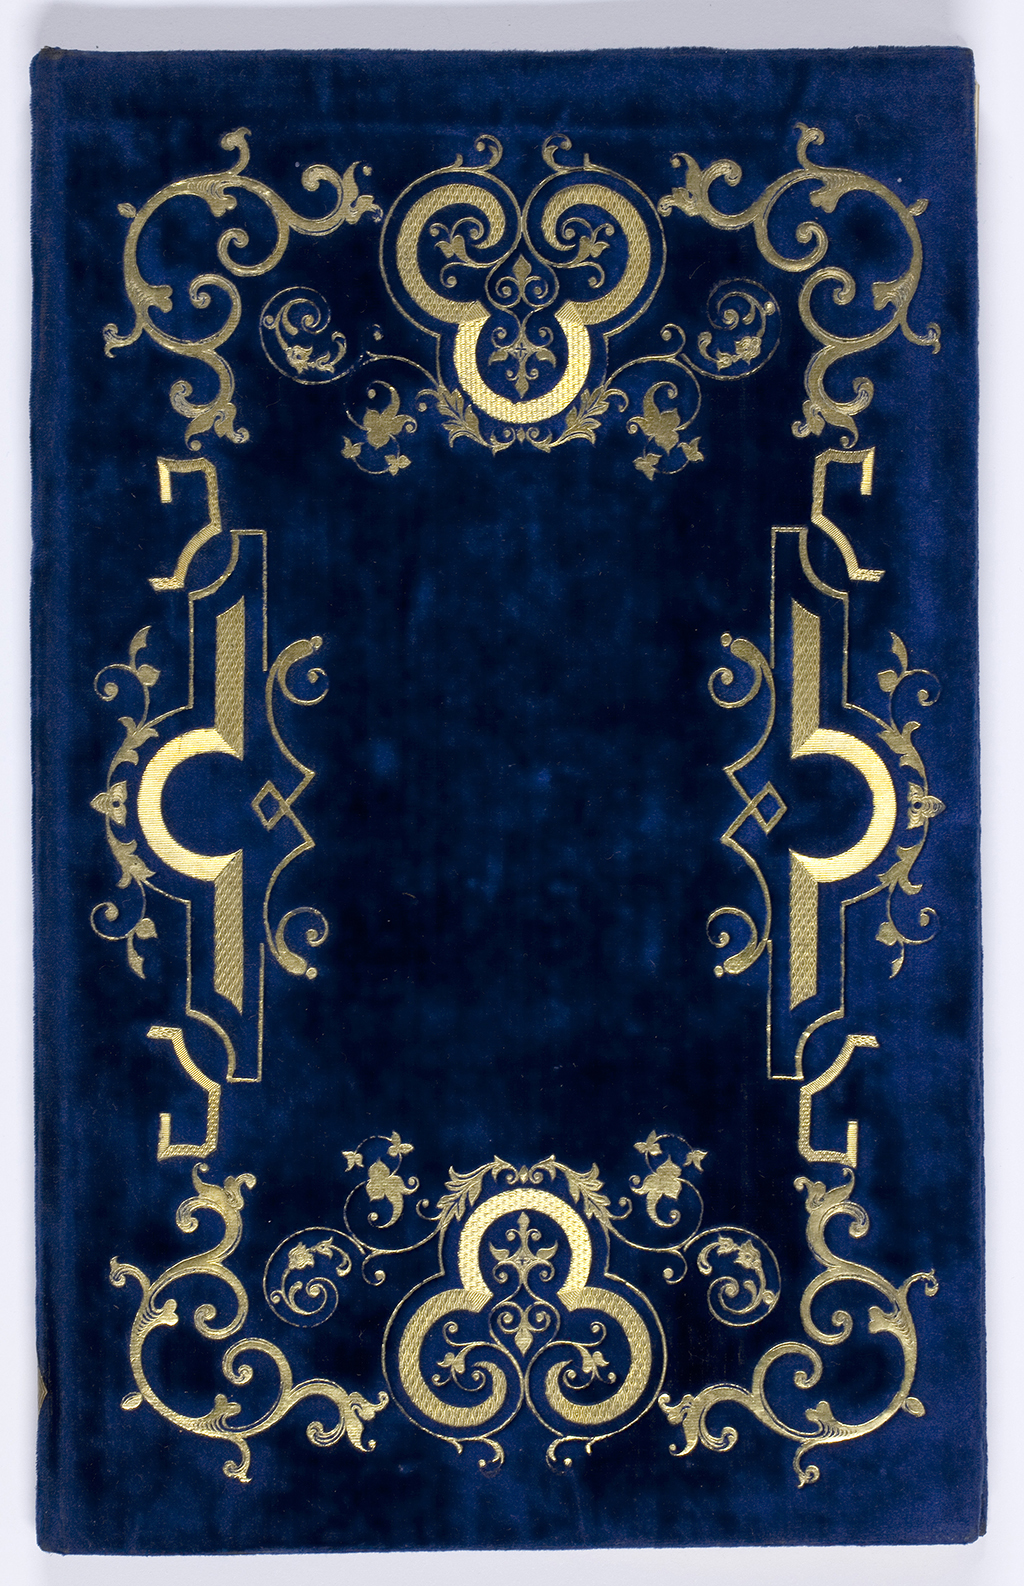 Ein blauer Prachteinband aus der Schlossbibliothek Baden-Baden, handgefertigt und mit prächtigem Rankenwerk aus Blattgold geschmückt 